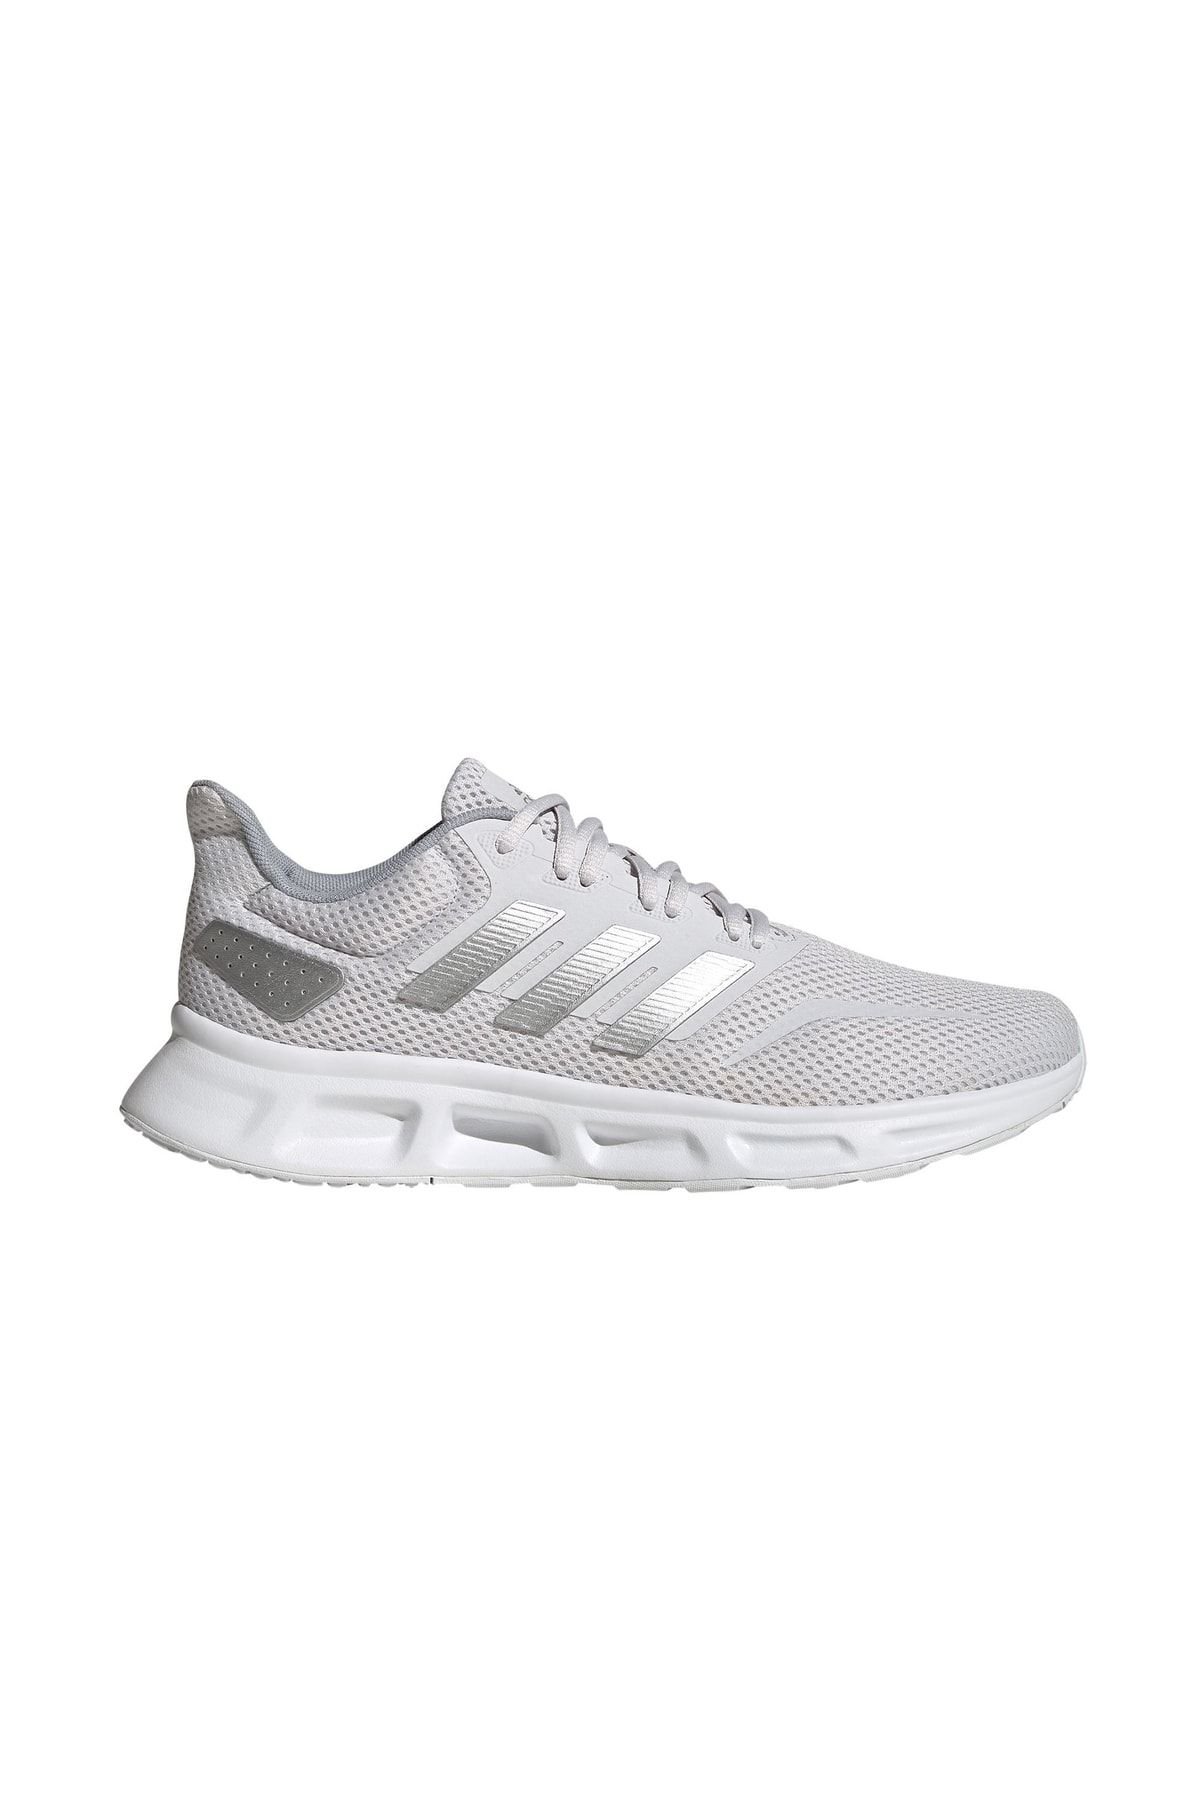 adidas Tenis Ayakkabısı Spor Beyaz Ef0213 Advantage K